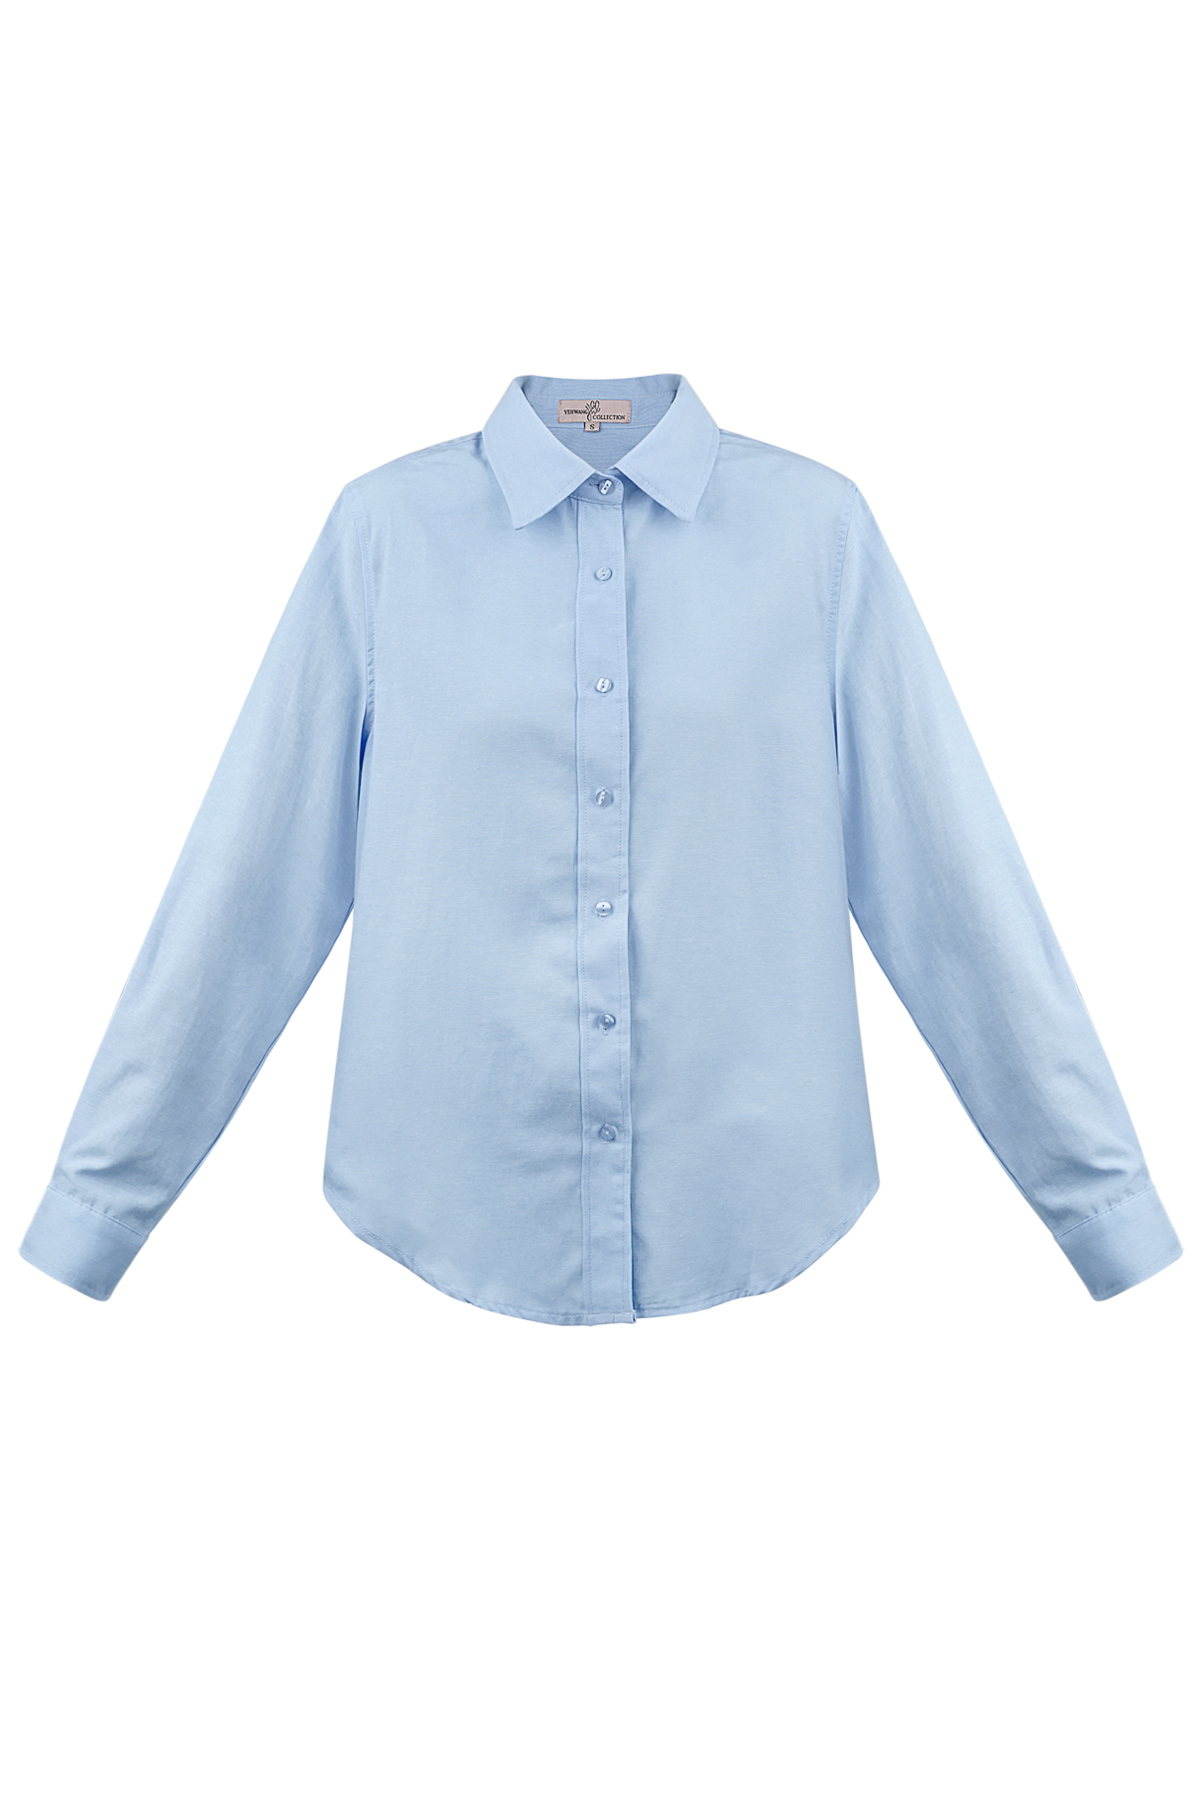 Basic plain blouse - blue h5 